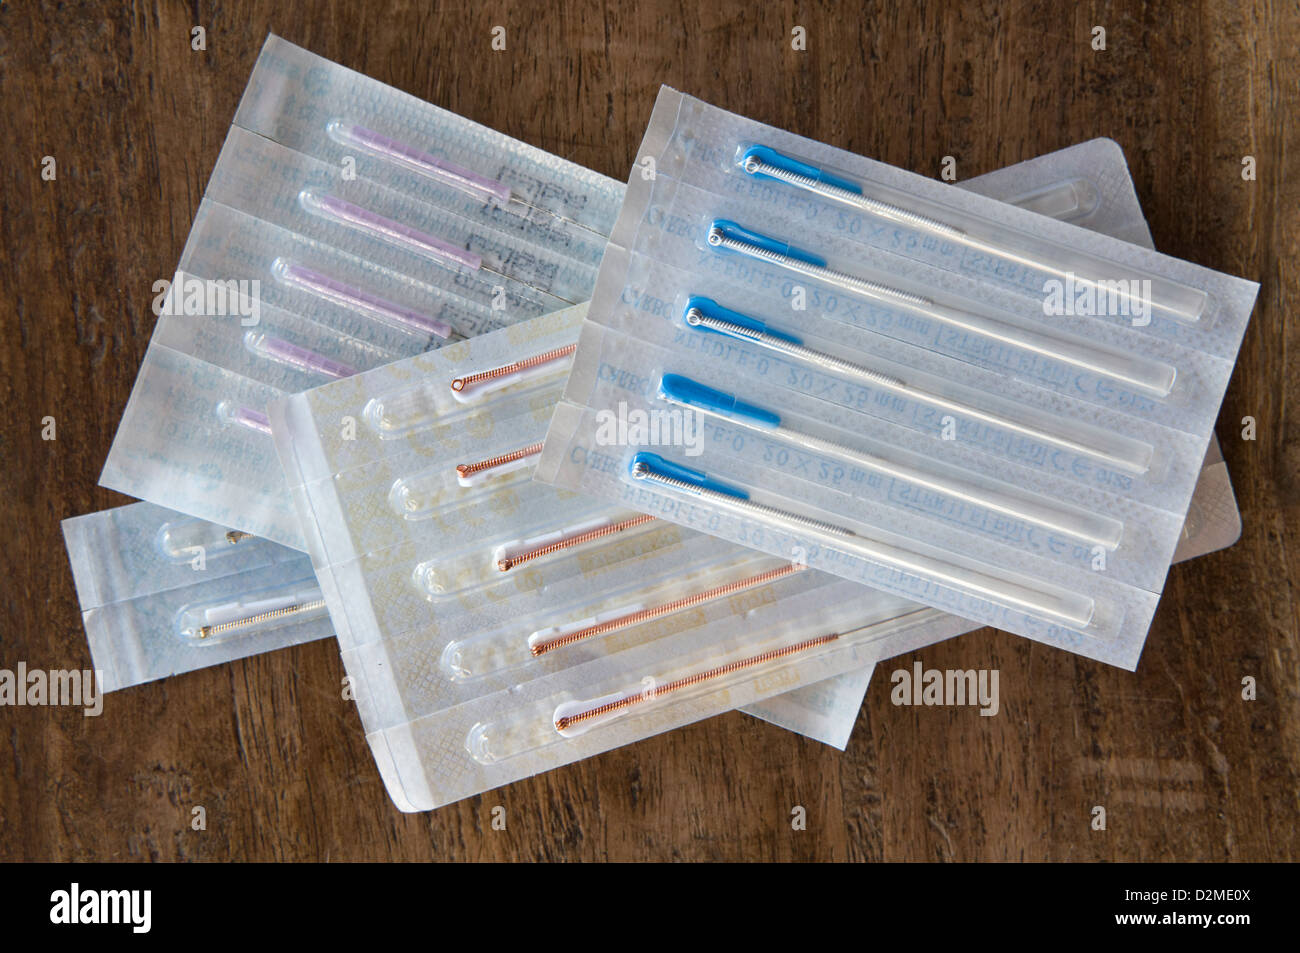 Surtido de diferentes tamaños de agujas de acupuntura en paquetes sellados adoptadas sobre una mesa de madera Foto de stock